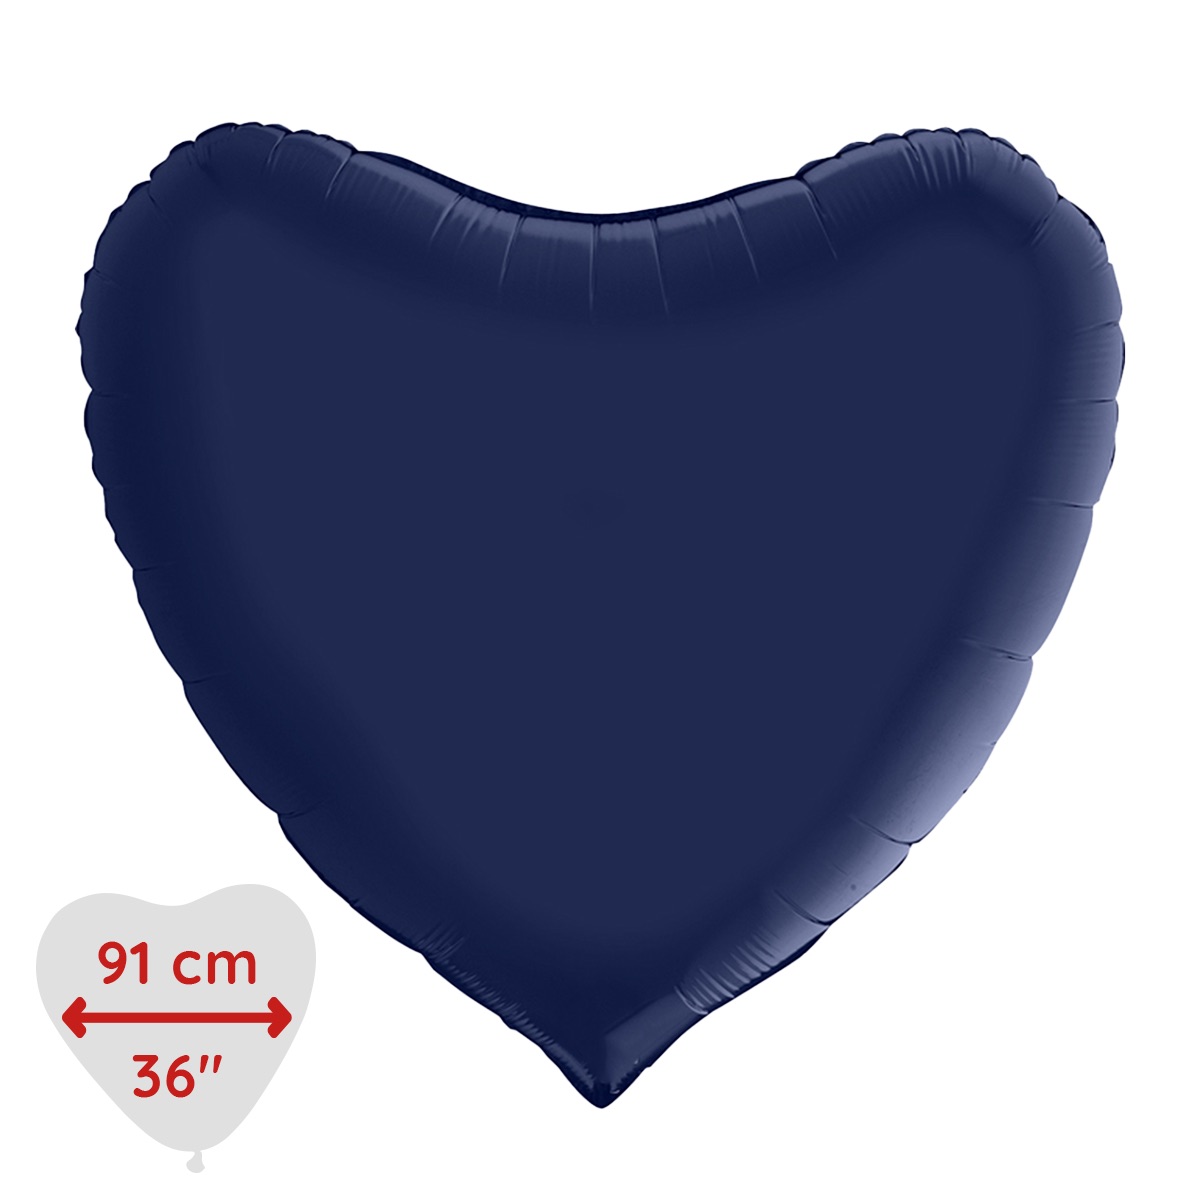 Folieballong - Hjärta Satin Blue Navy 91 cm